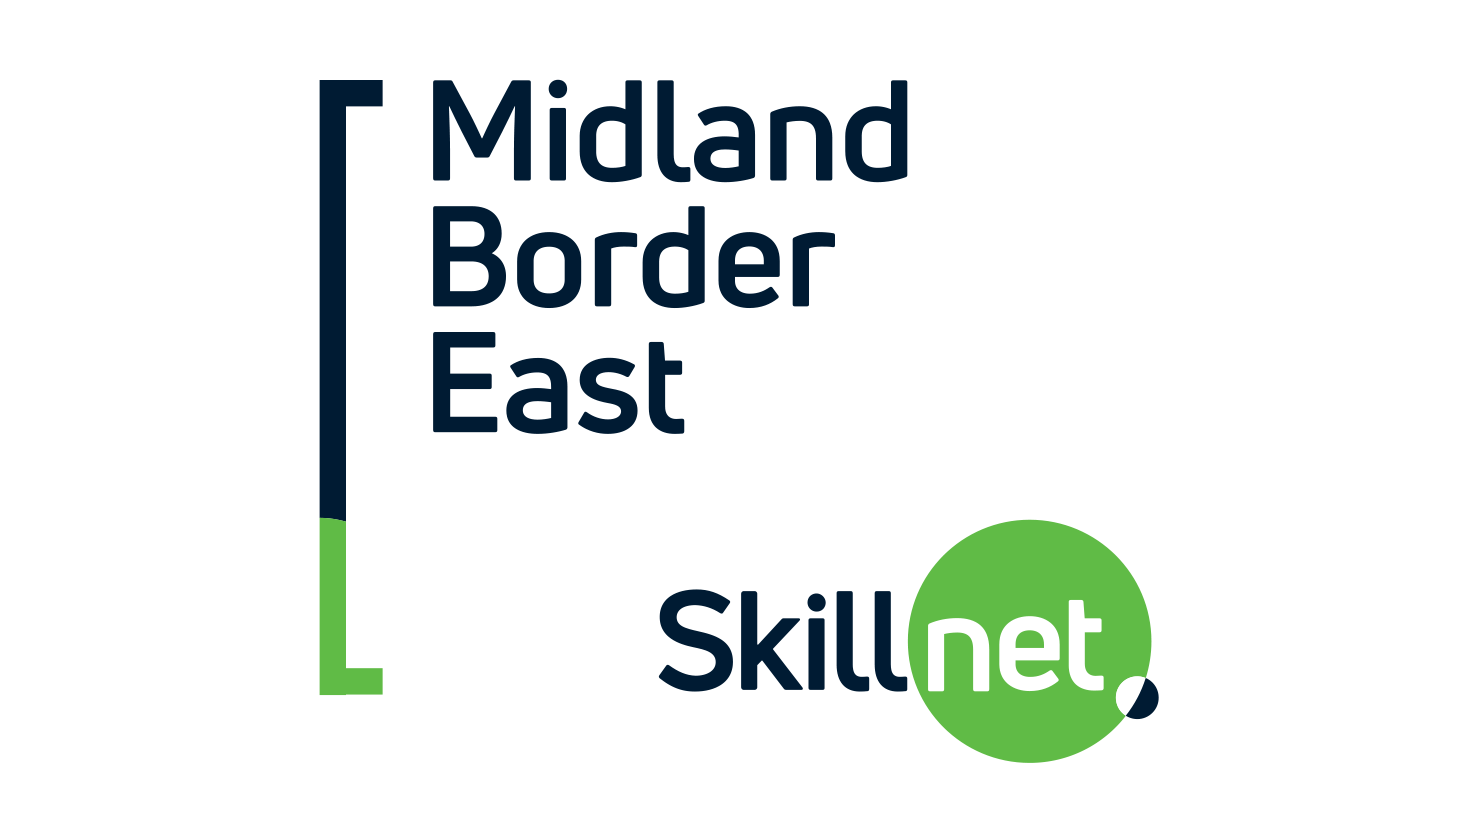 Midland Border East Skillnet